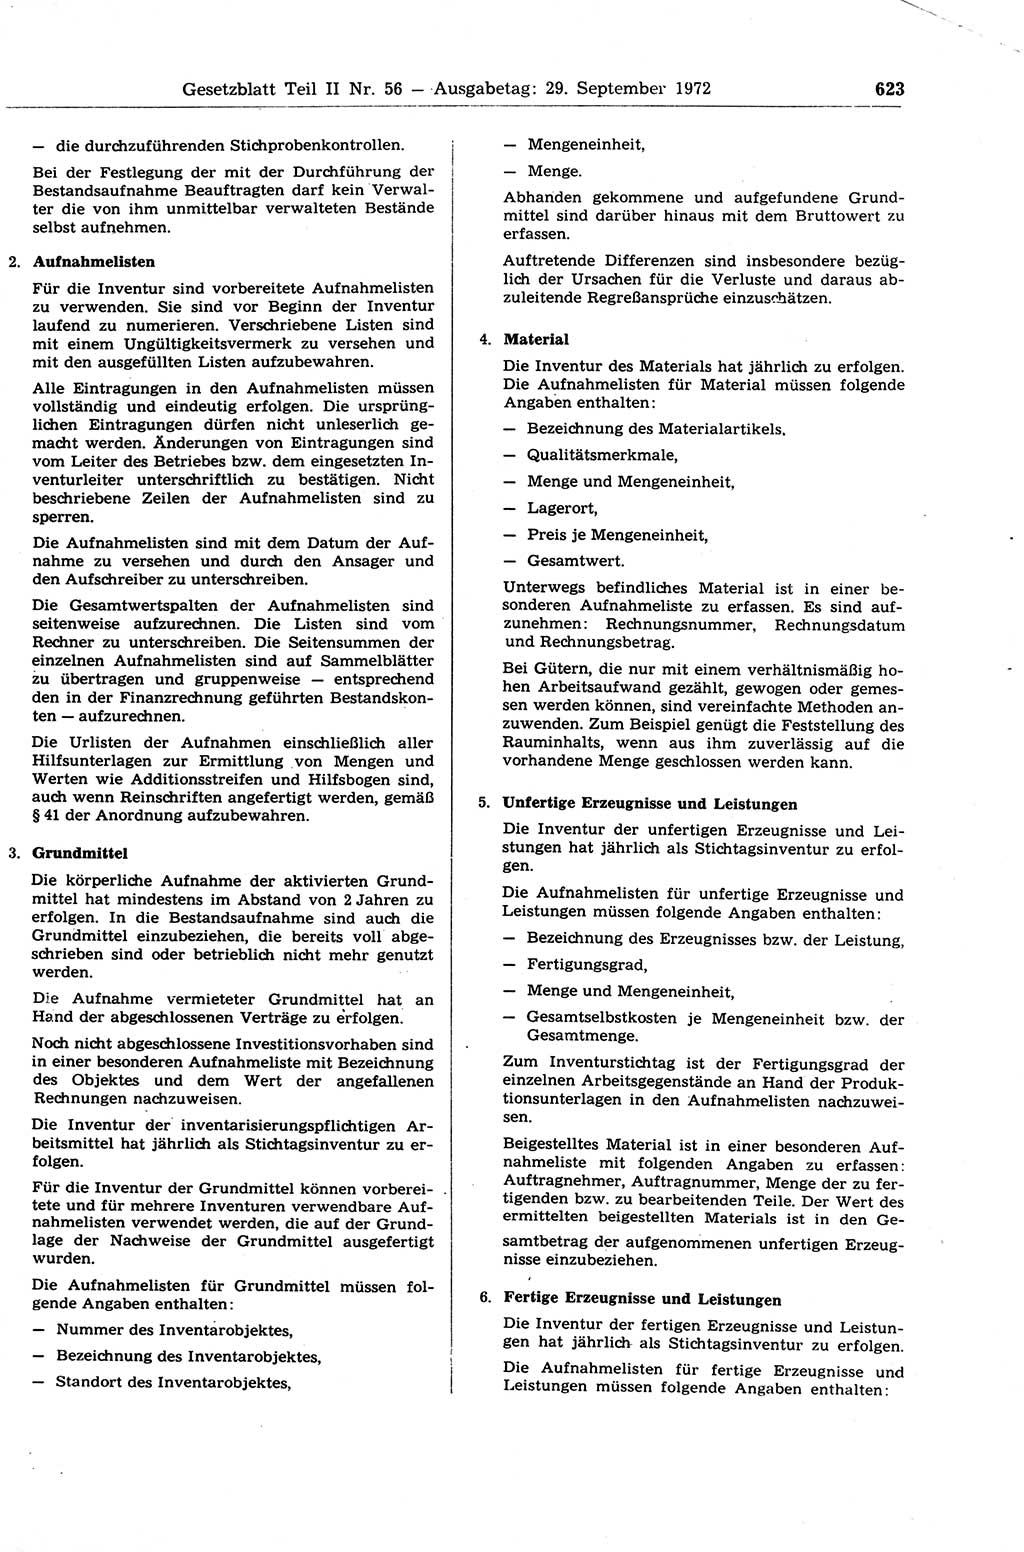 Gesetzblatt (GBl.) der Deutschen Demokratischen Republik (DDR) Teil ⅠⅠ 1972, Seite 623 (GBl. DDR ⅠⅠ 1972, S. 623)